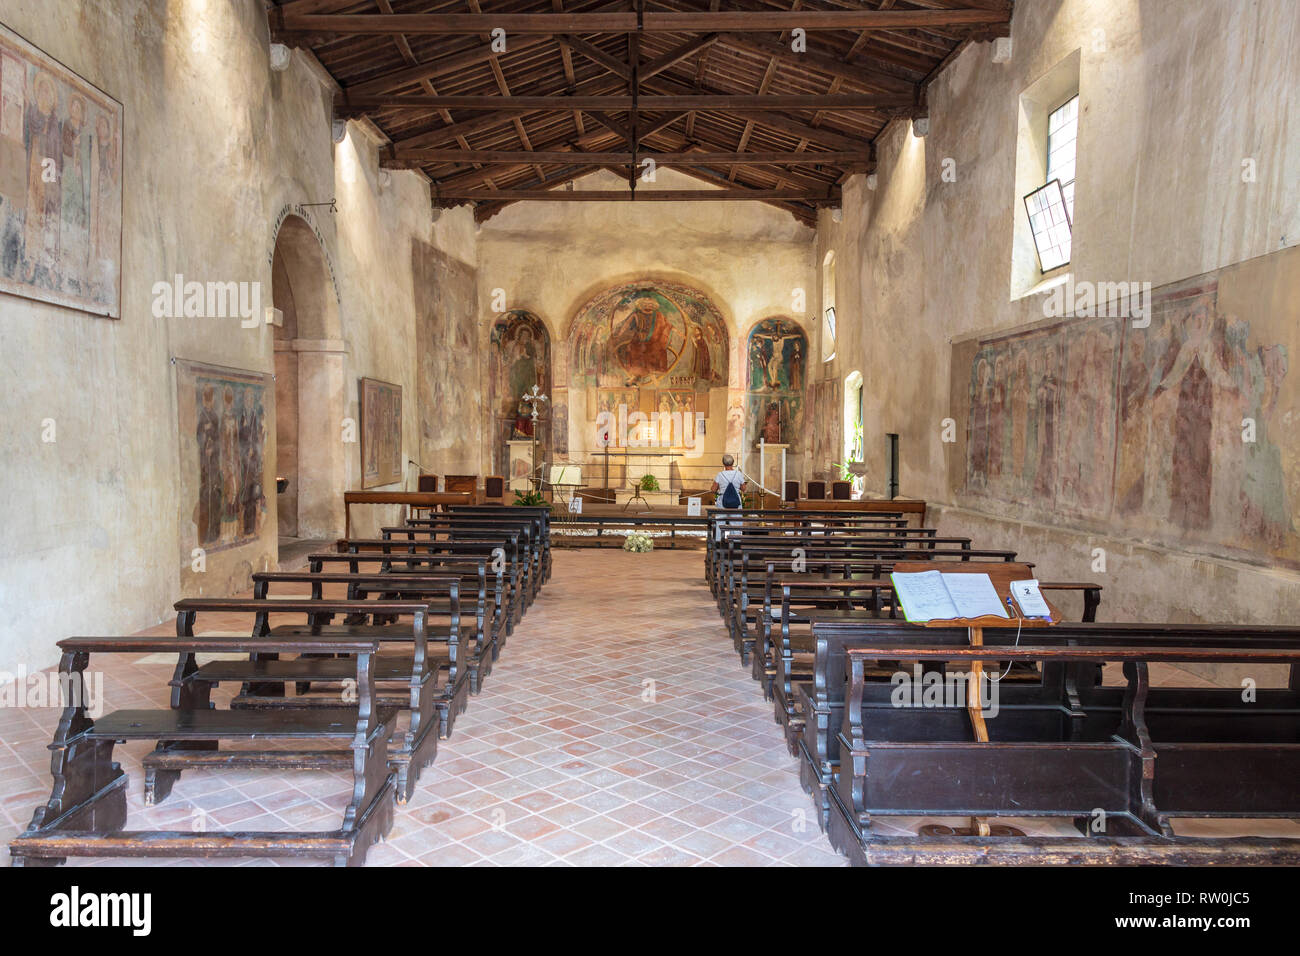 The Chiesa di San Pietro church in Sirmione on Lake Garda Stock Photo